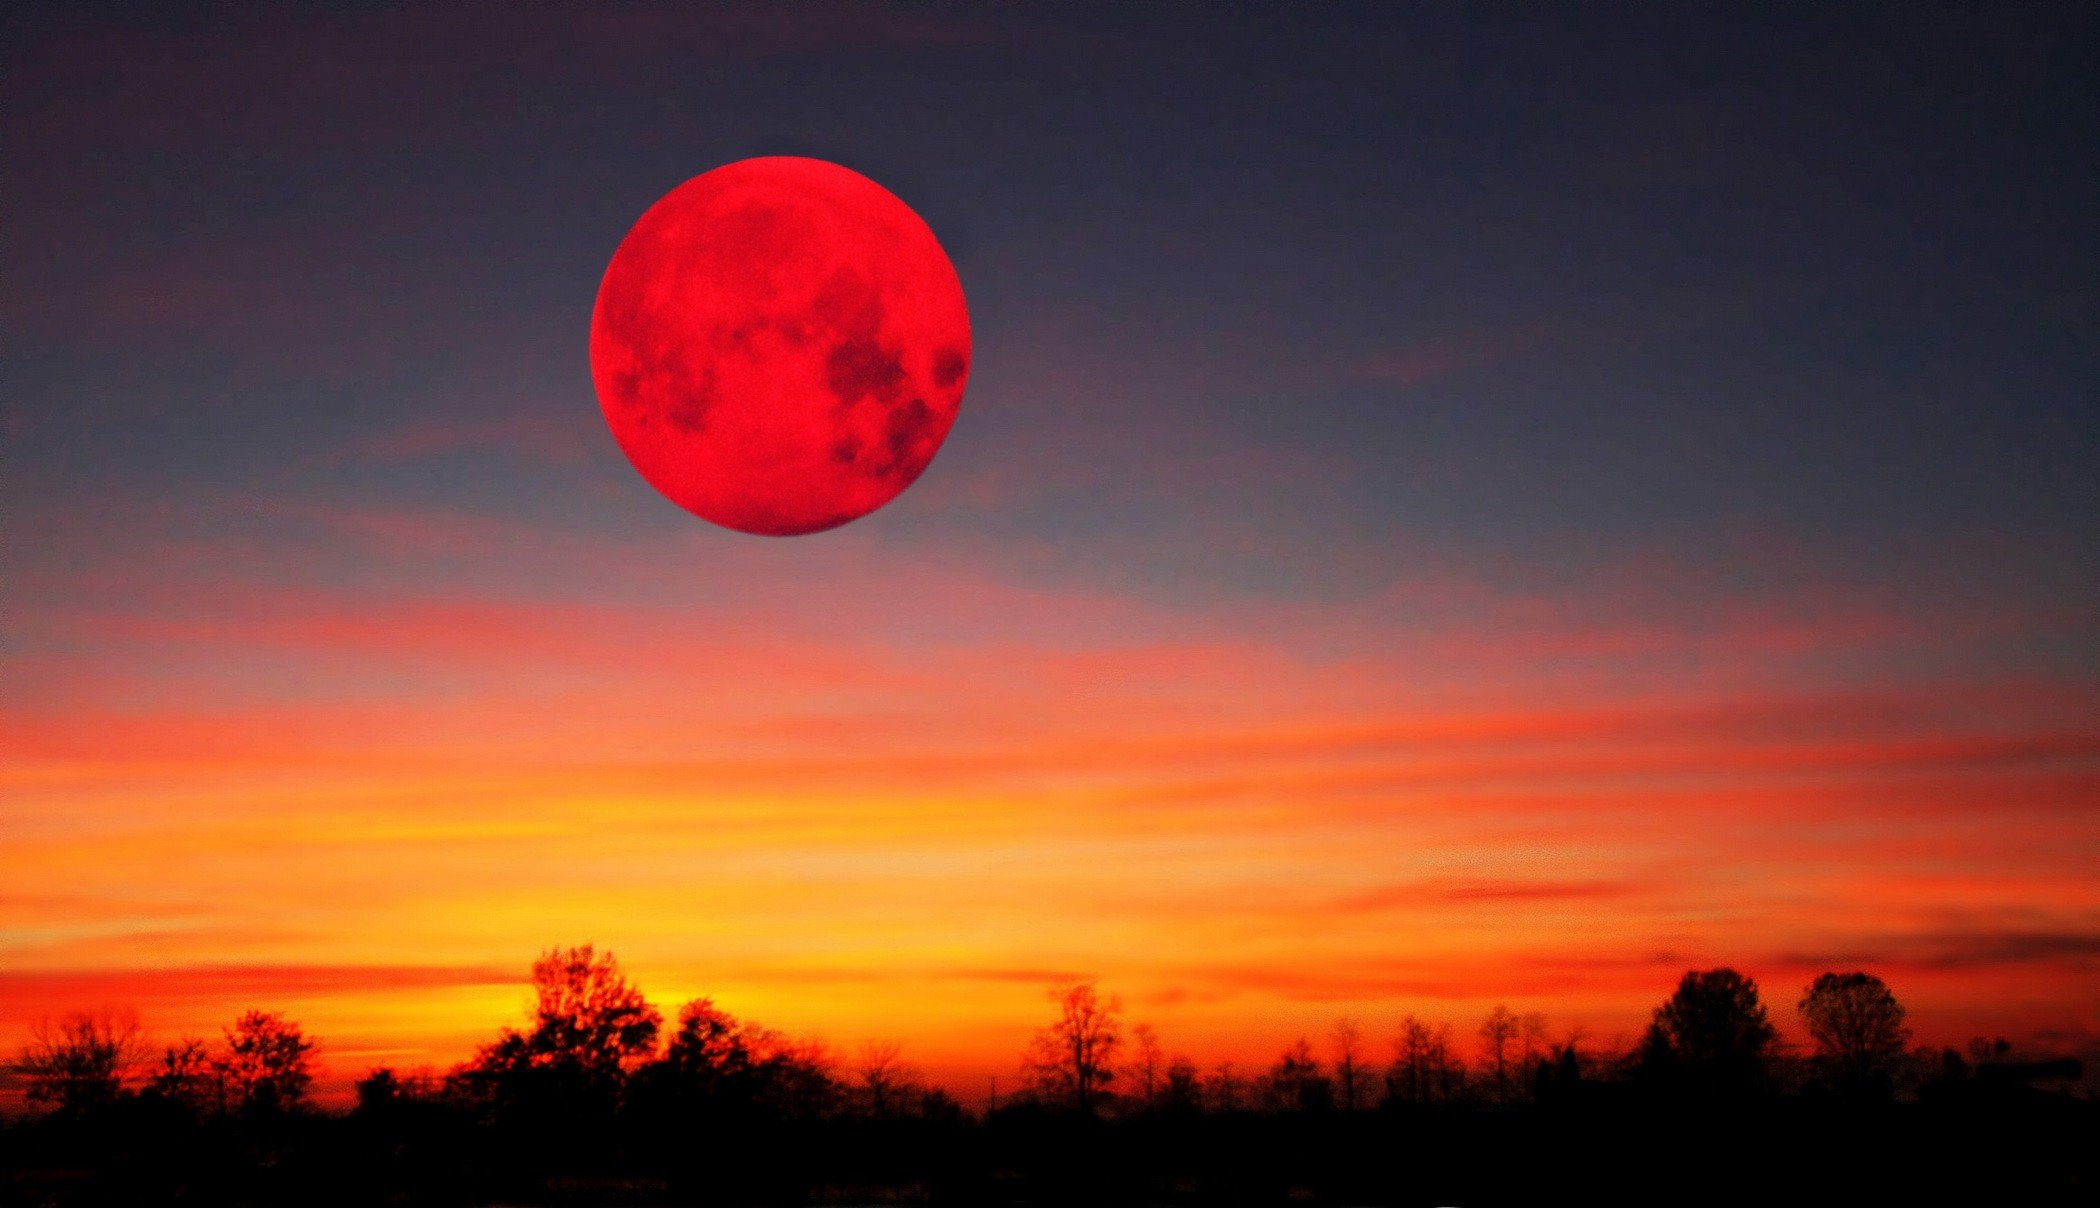 "Кровавая" Луна зажглась в ночном небе - украинцам повезло увидеть чудо вживую: захватывающие кадры редкого затмения 